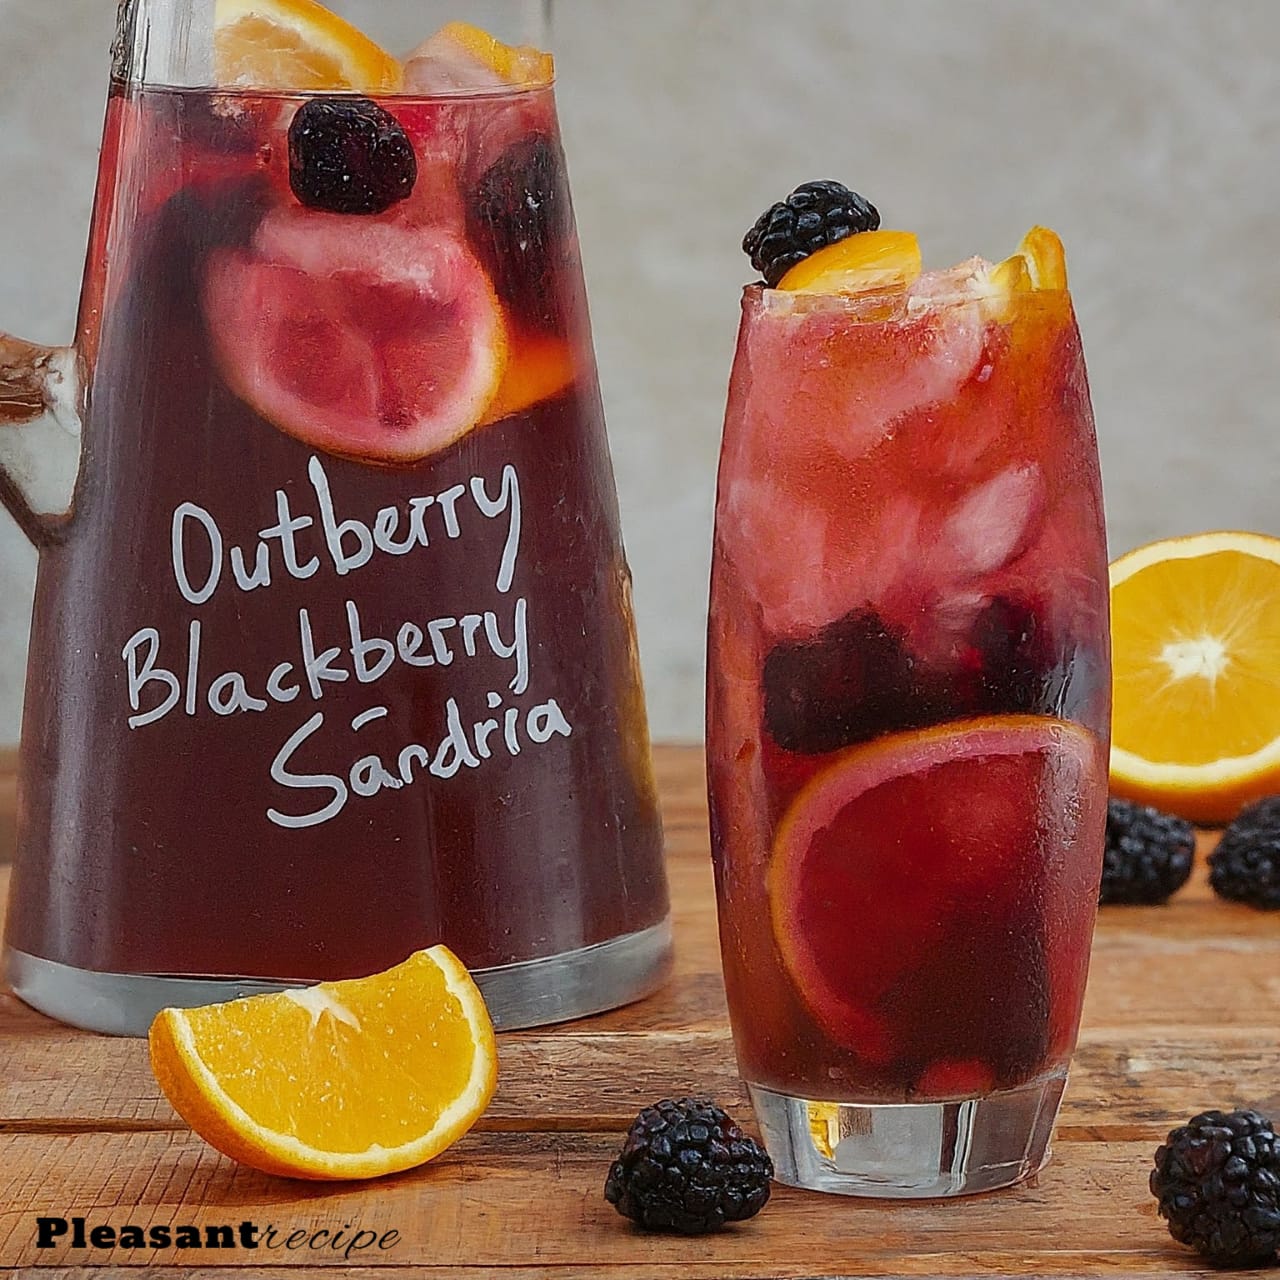 Outback Blackberry Sangria recipe